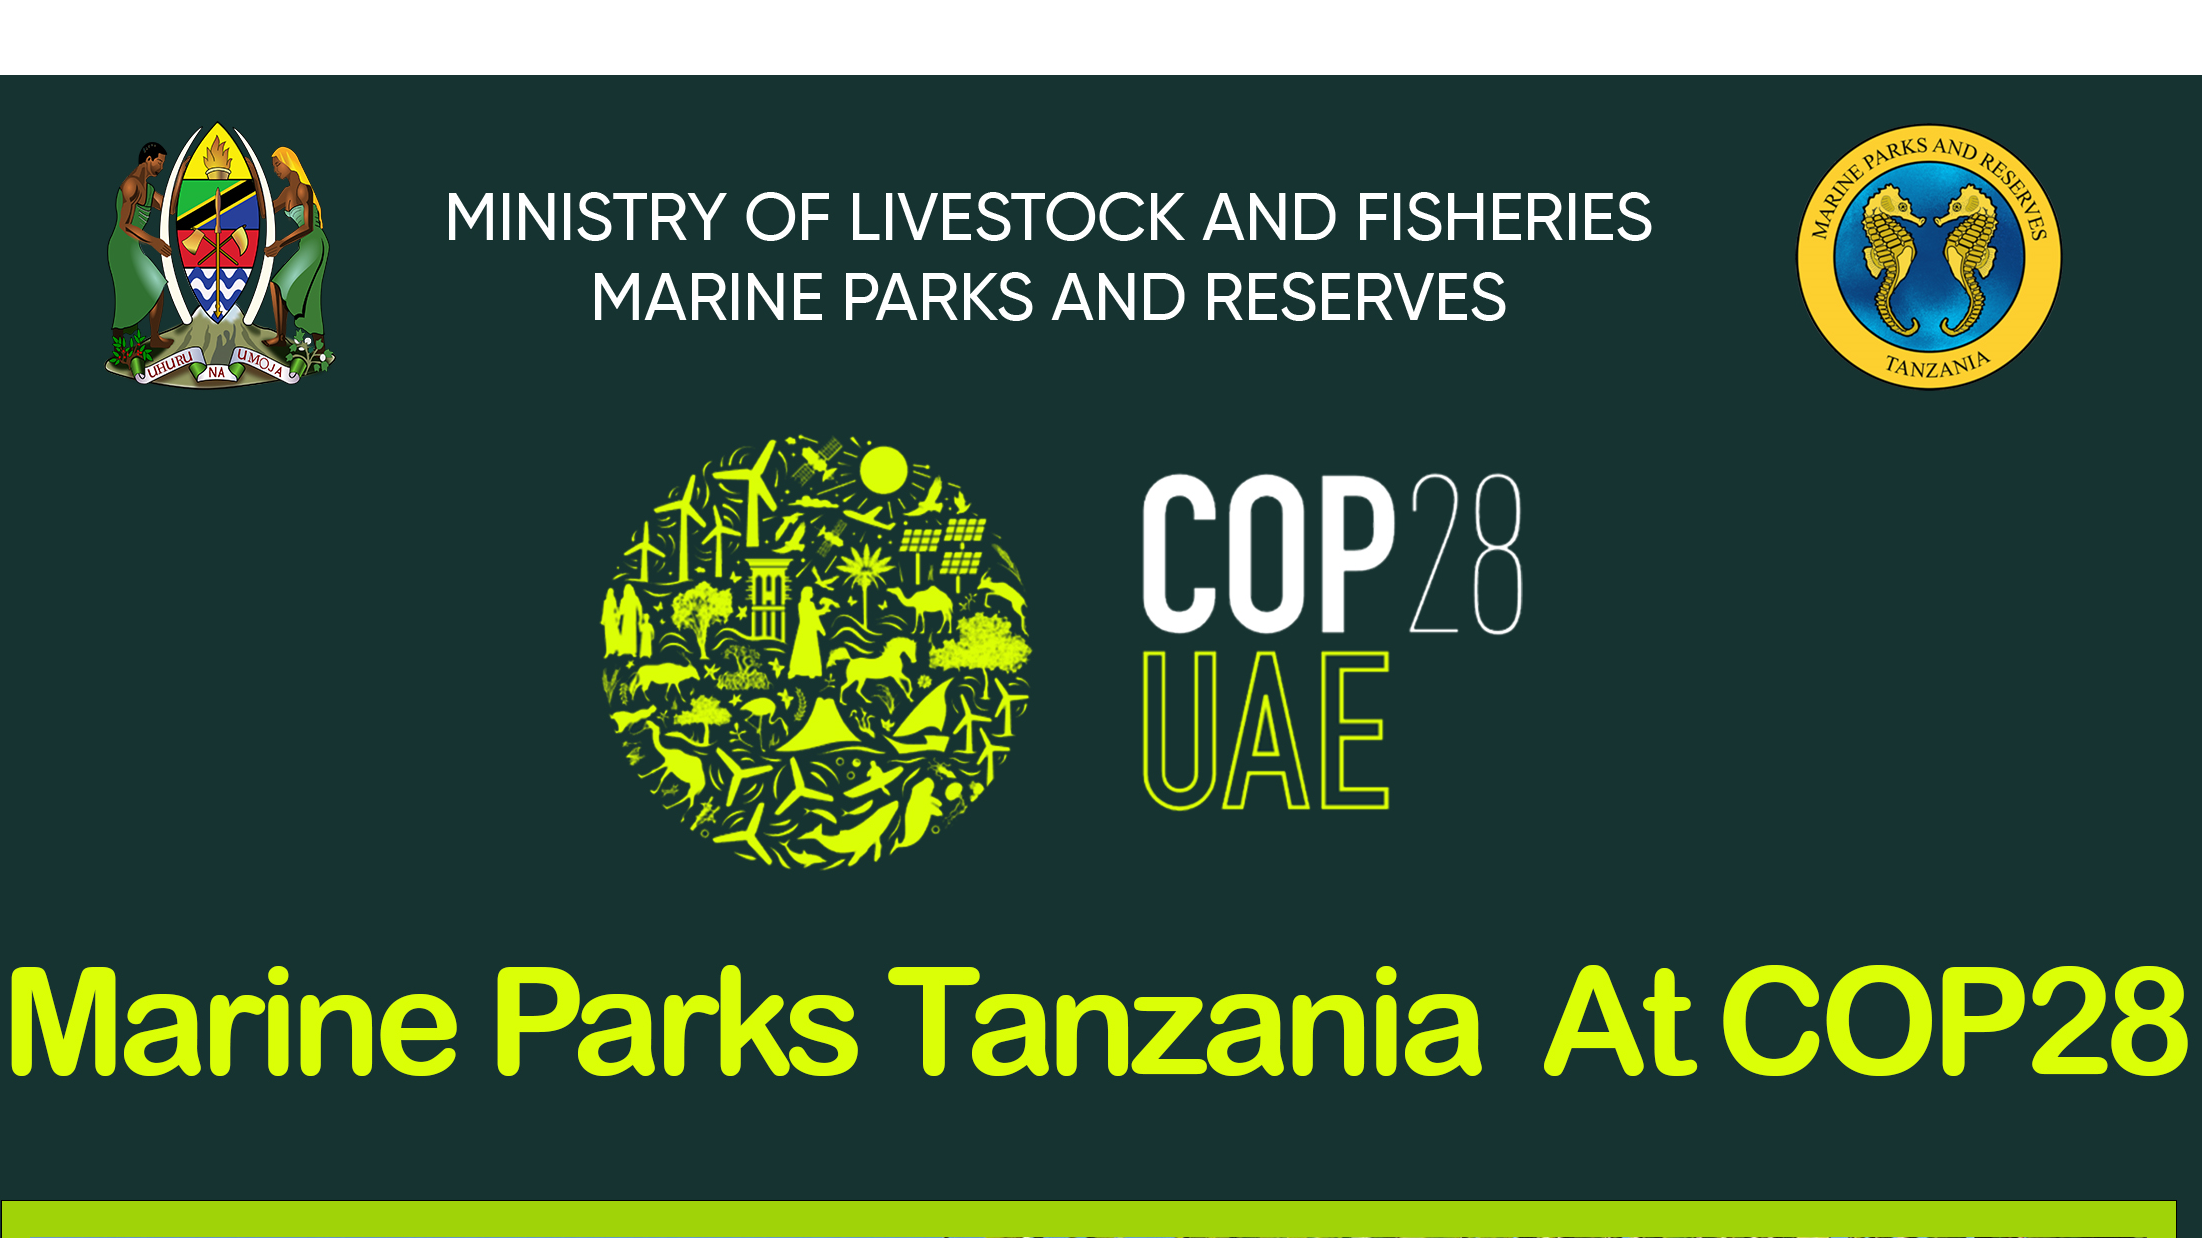 Kuungana kwa mustakabali endelevu katika COP28!